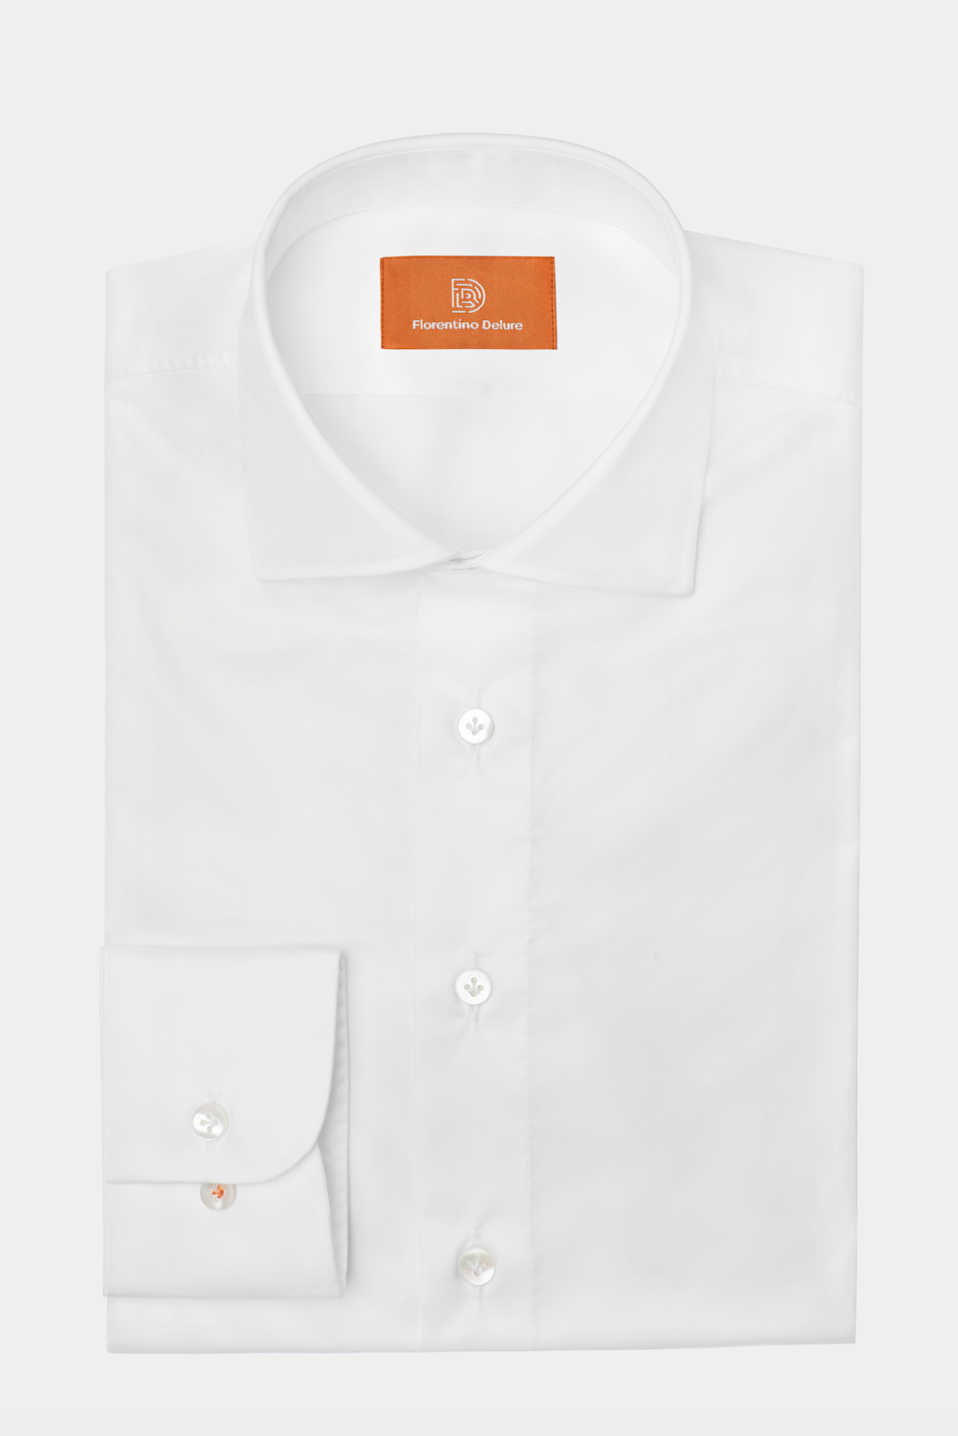 White Hand-made Shirt